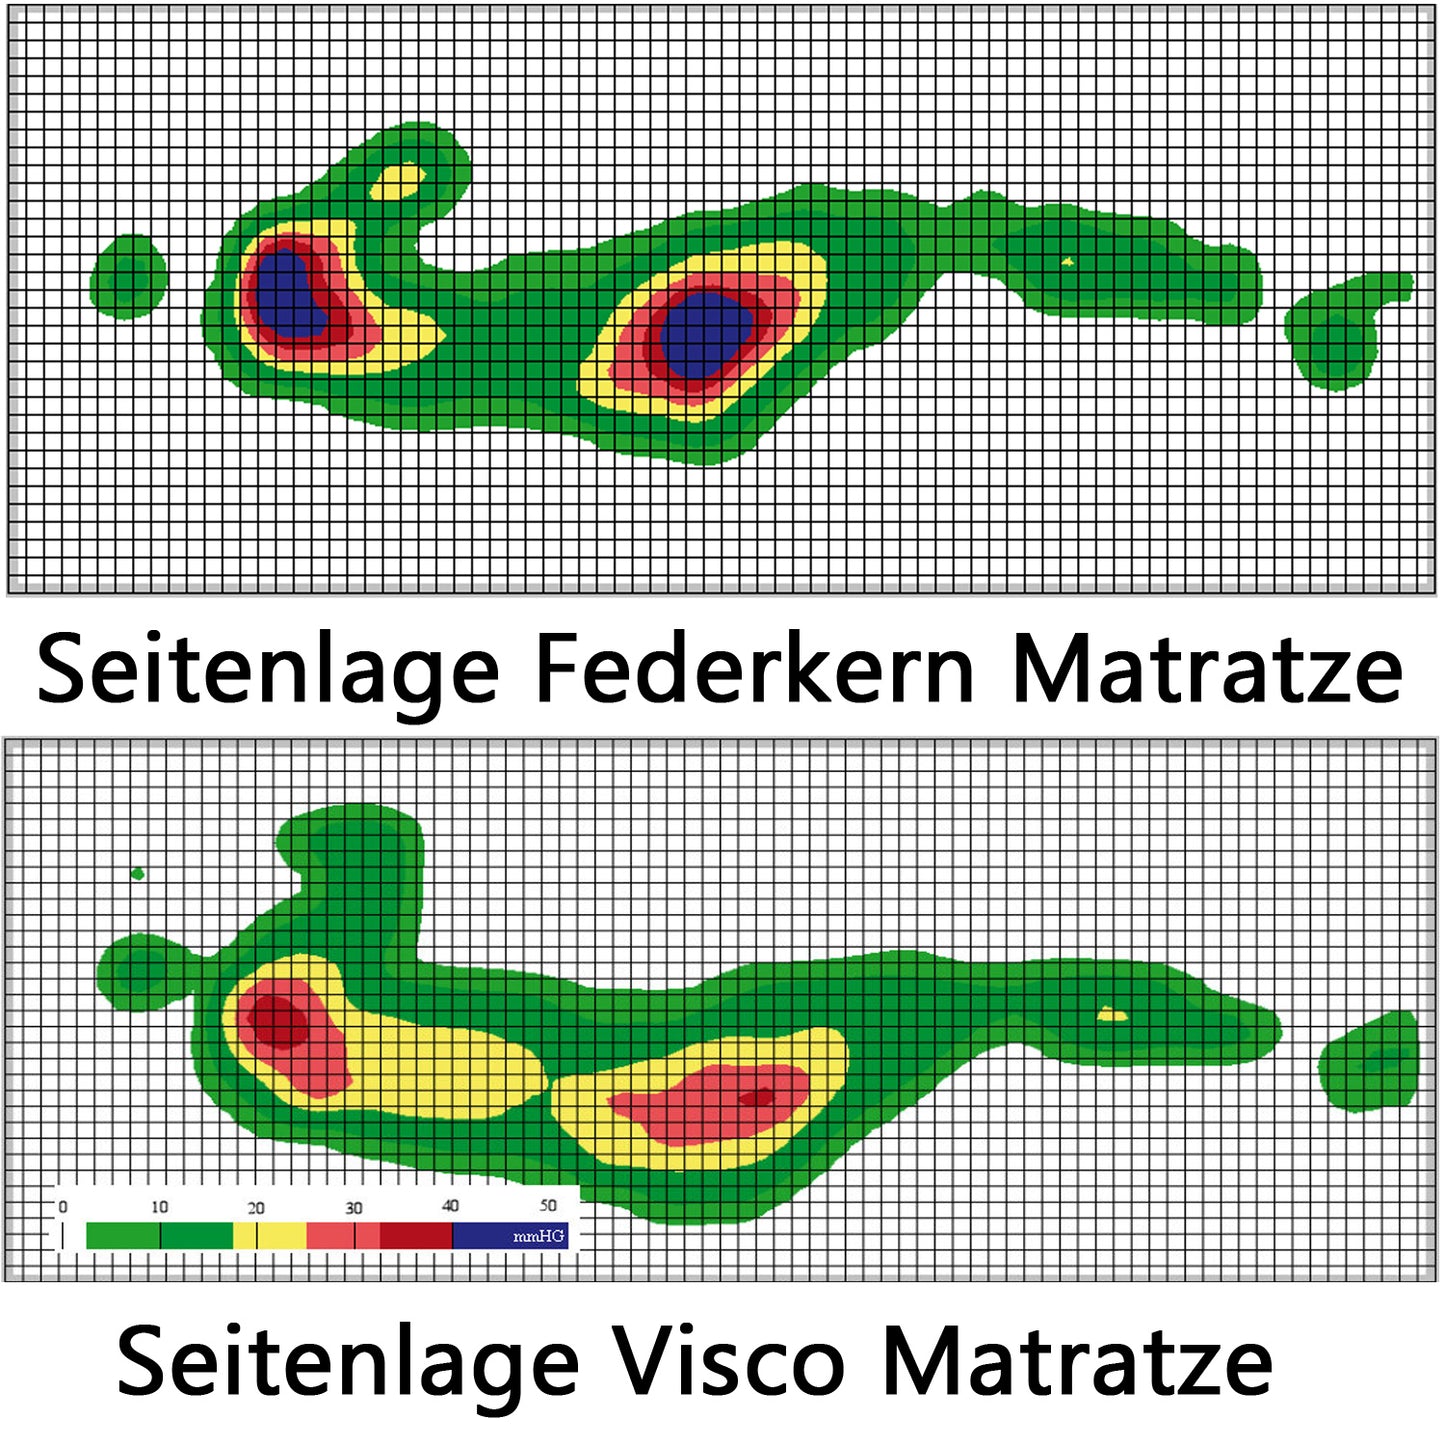 
                  
                    ErgoCheck Vergleich Federkern Matratze und Visco Matratze
                  
                